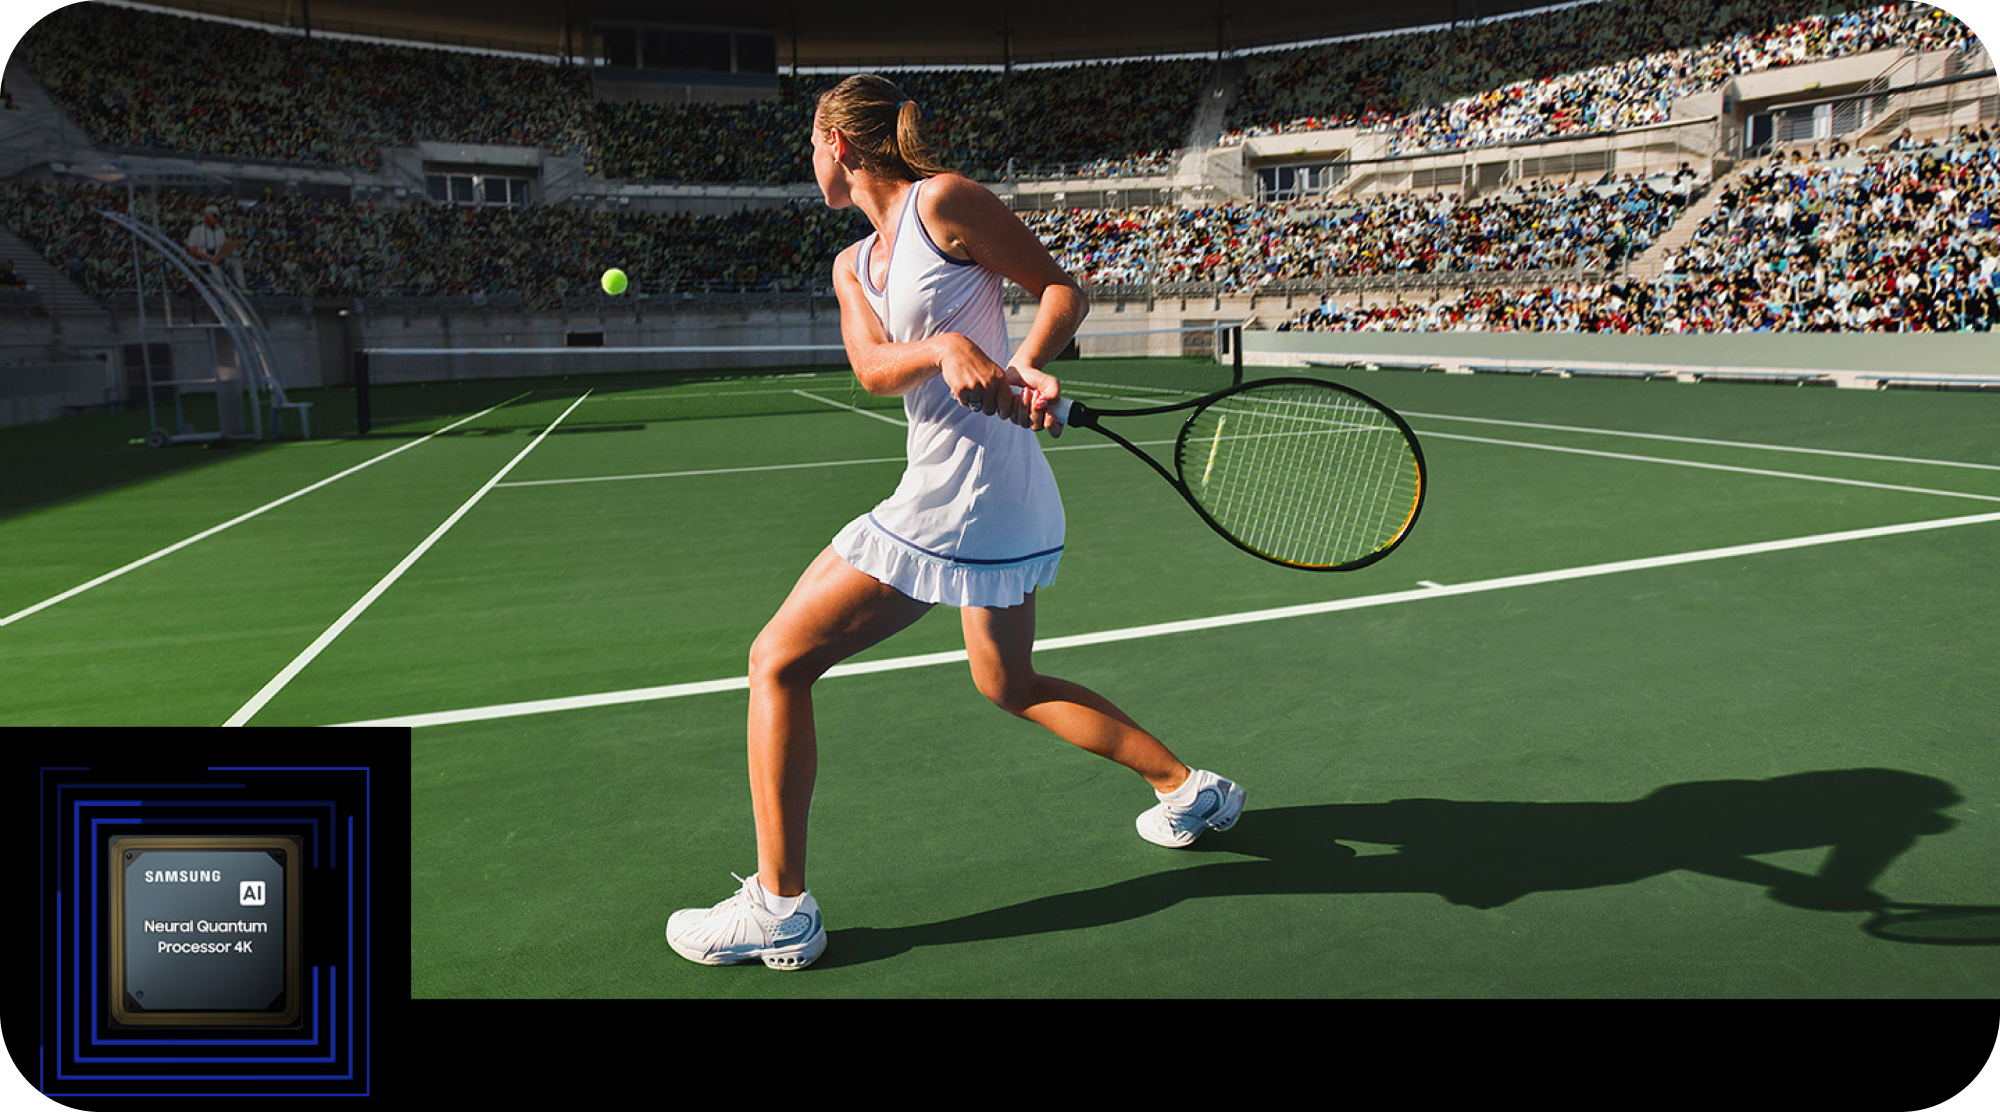 Samsung TV ja Neural Quantum Processor 4K -suoritin ja tyttö pelaamassa tennistä